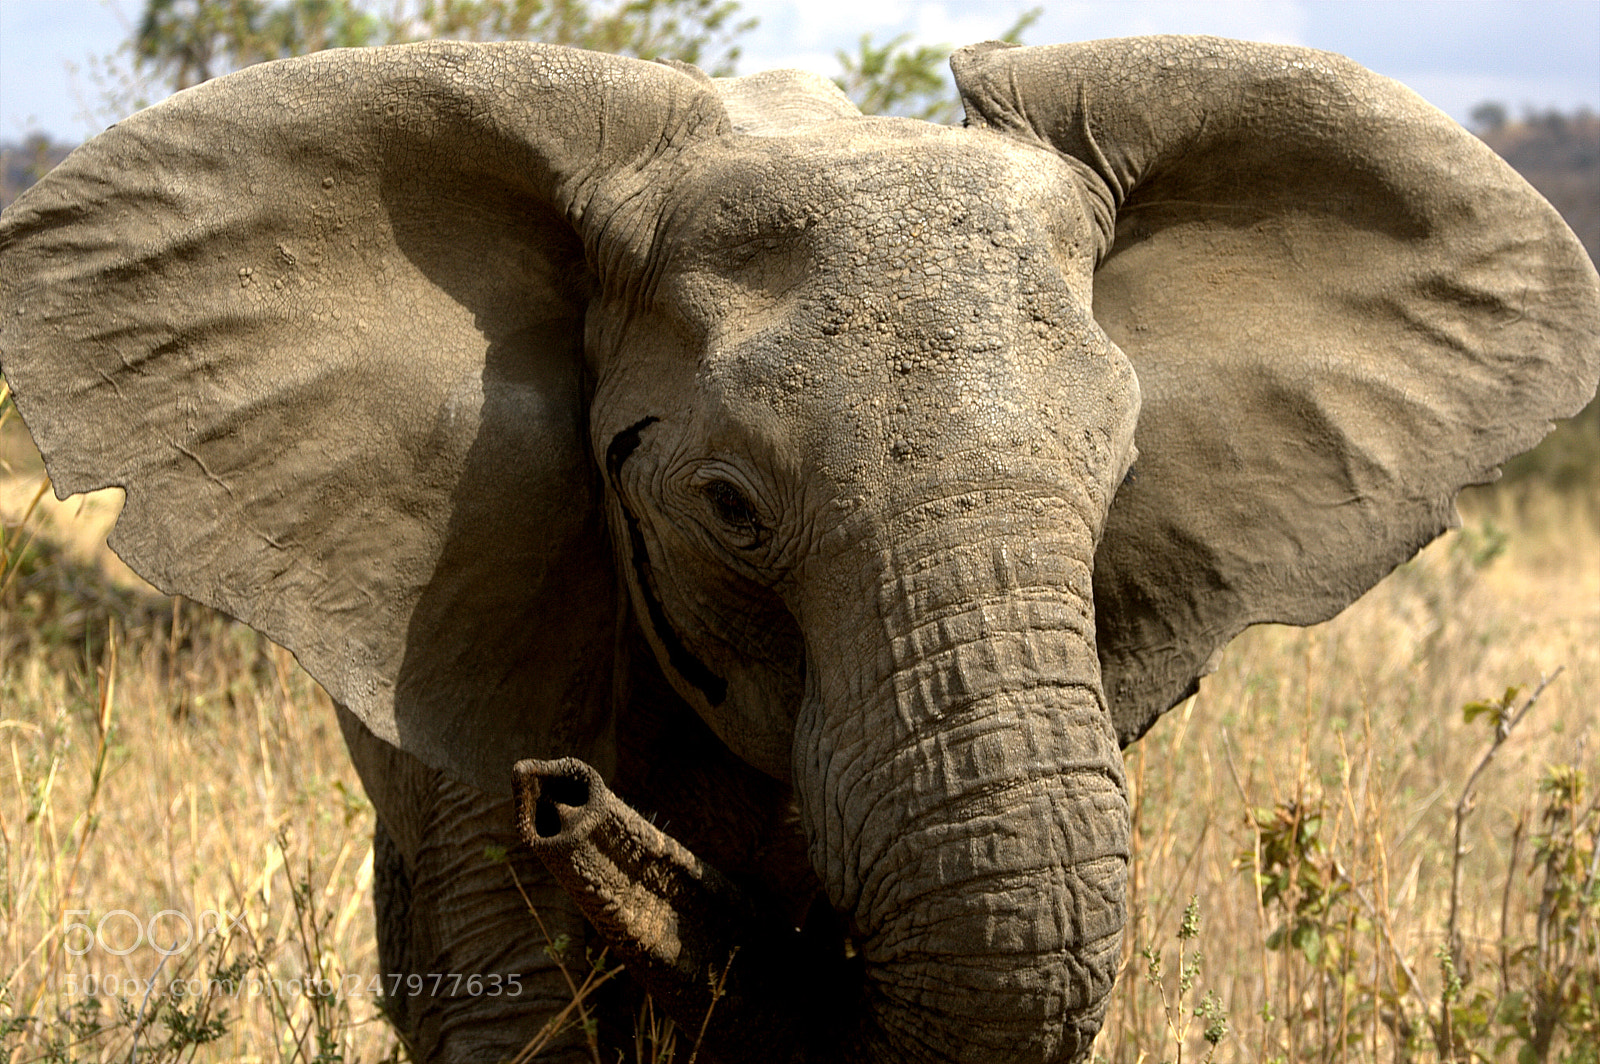 Canon EOS-1D Mark III sample photo. Elephant power photography